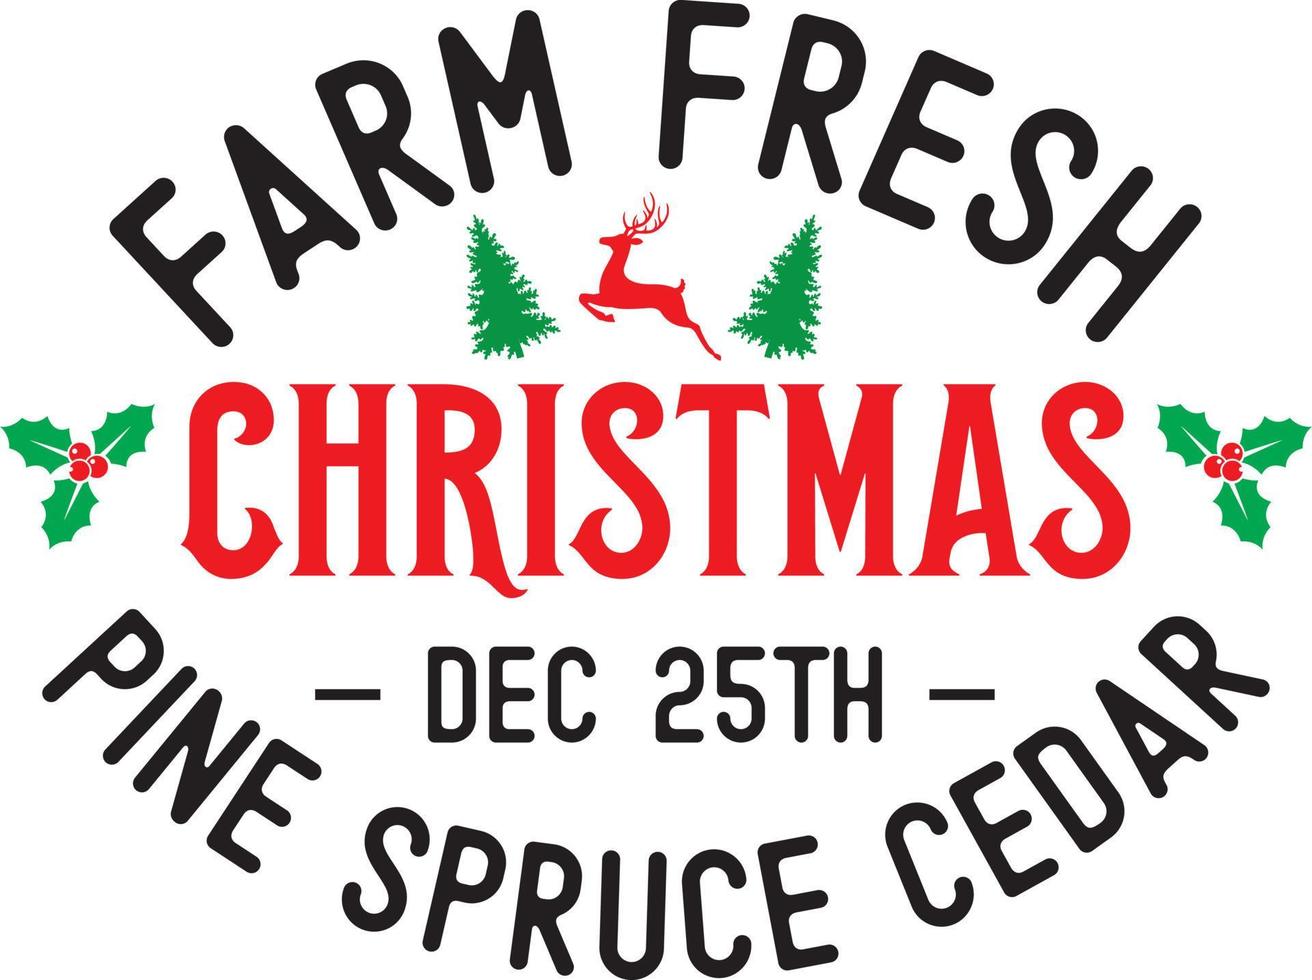 Farm Fresh Christmas, Pine Spruce Cedar, Christmas Holiday, Vector Illustration Files